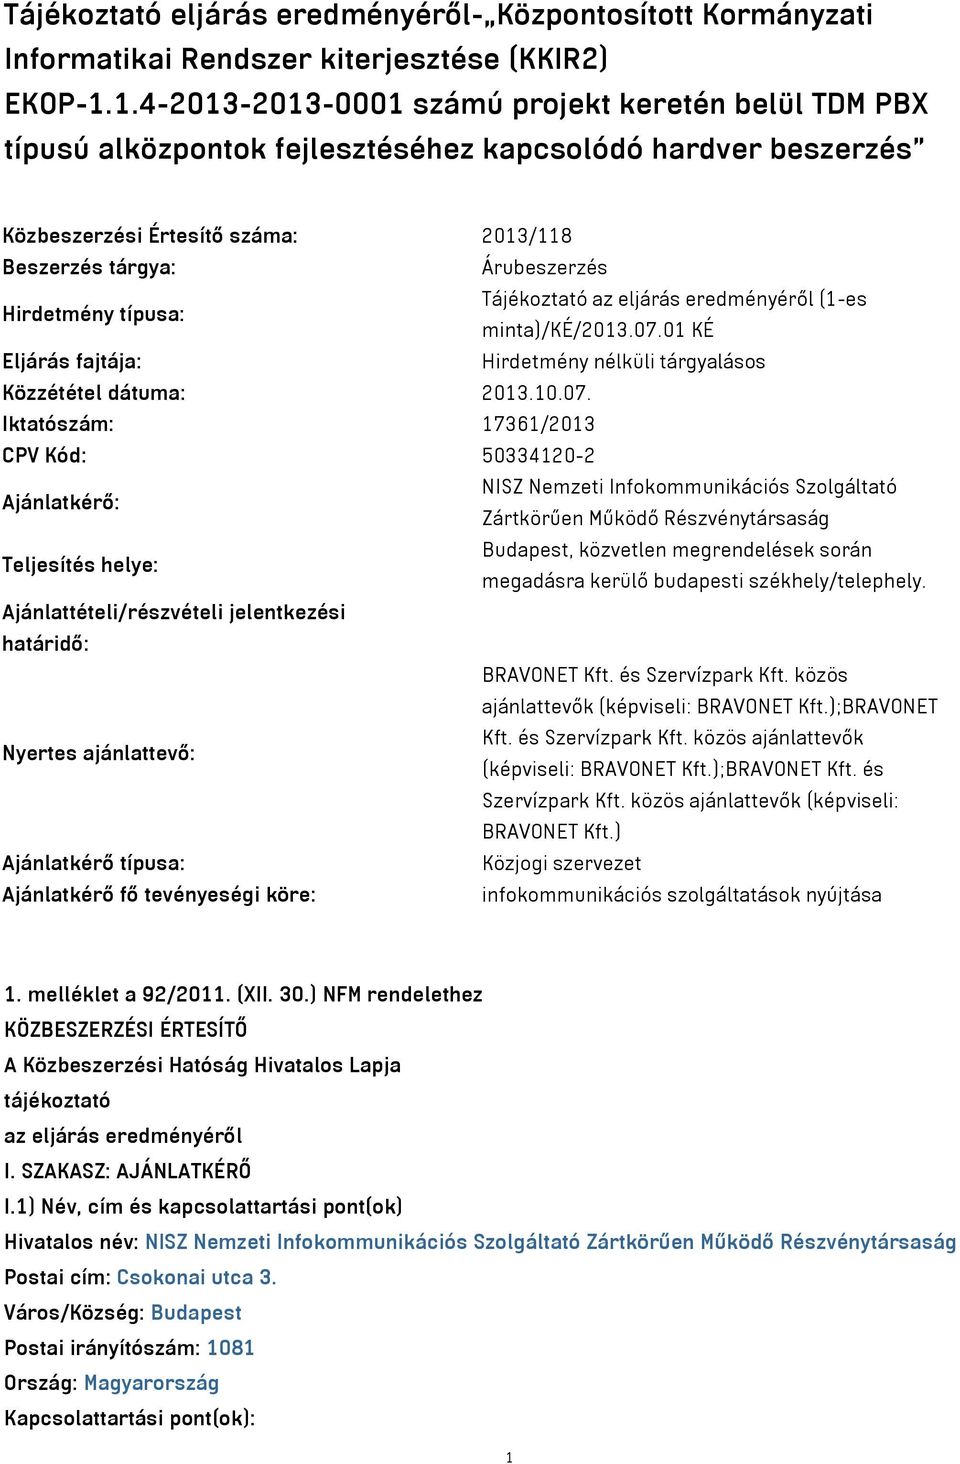 típusa: Tájékoztató az eljárás eredményéről (1-es minta)/ké/2013.07.